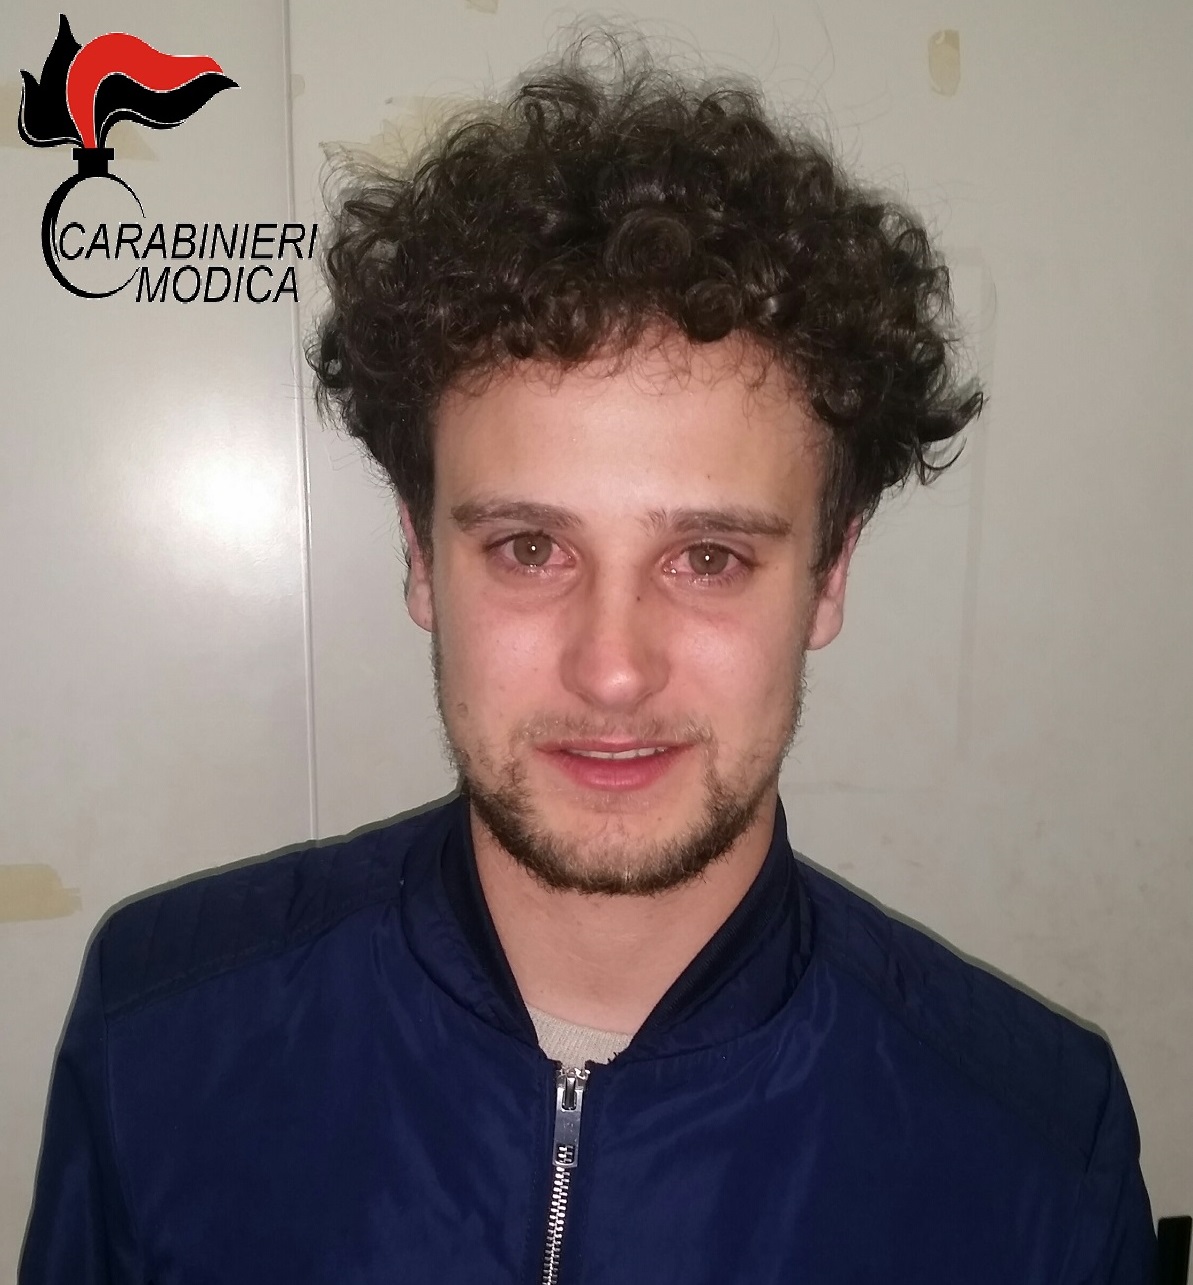  Donnalucata  Trasportava diverse dosi di cocaina, giovane arrestato dai Carabinieri